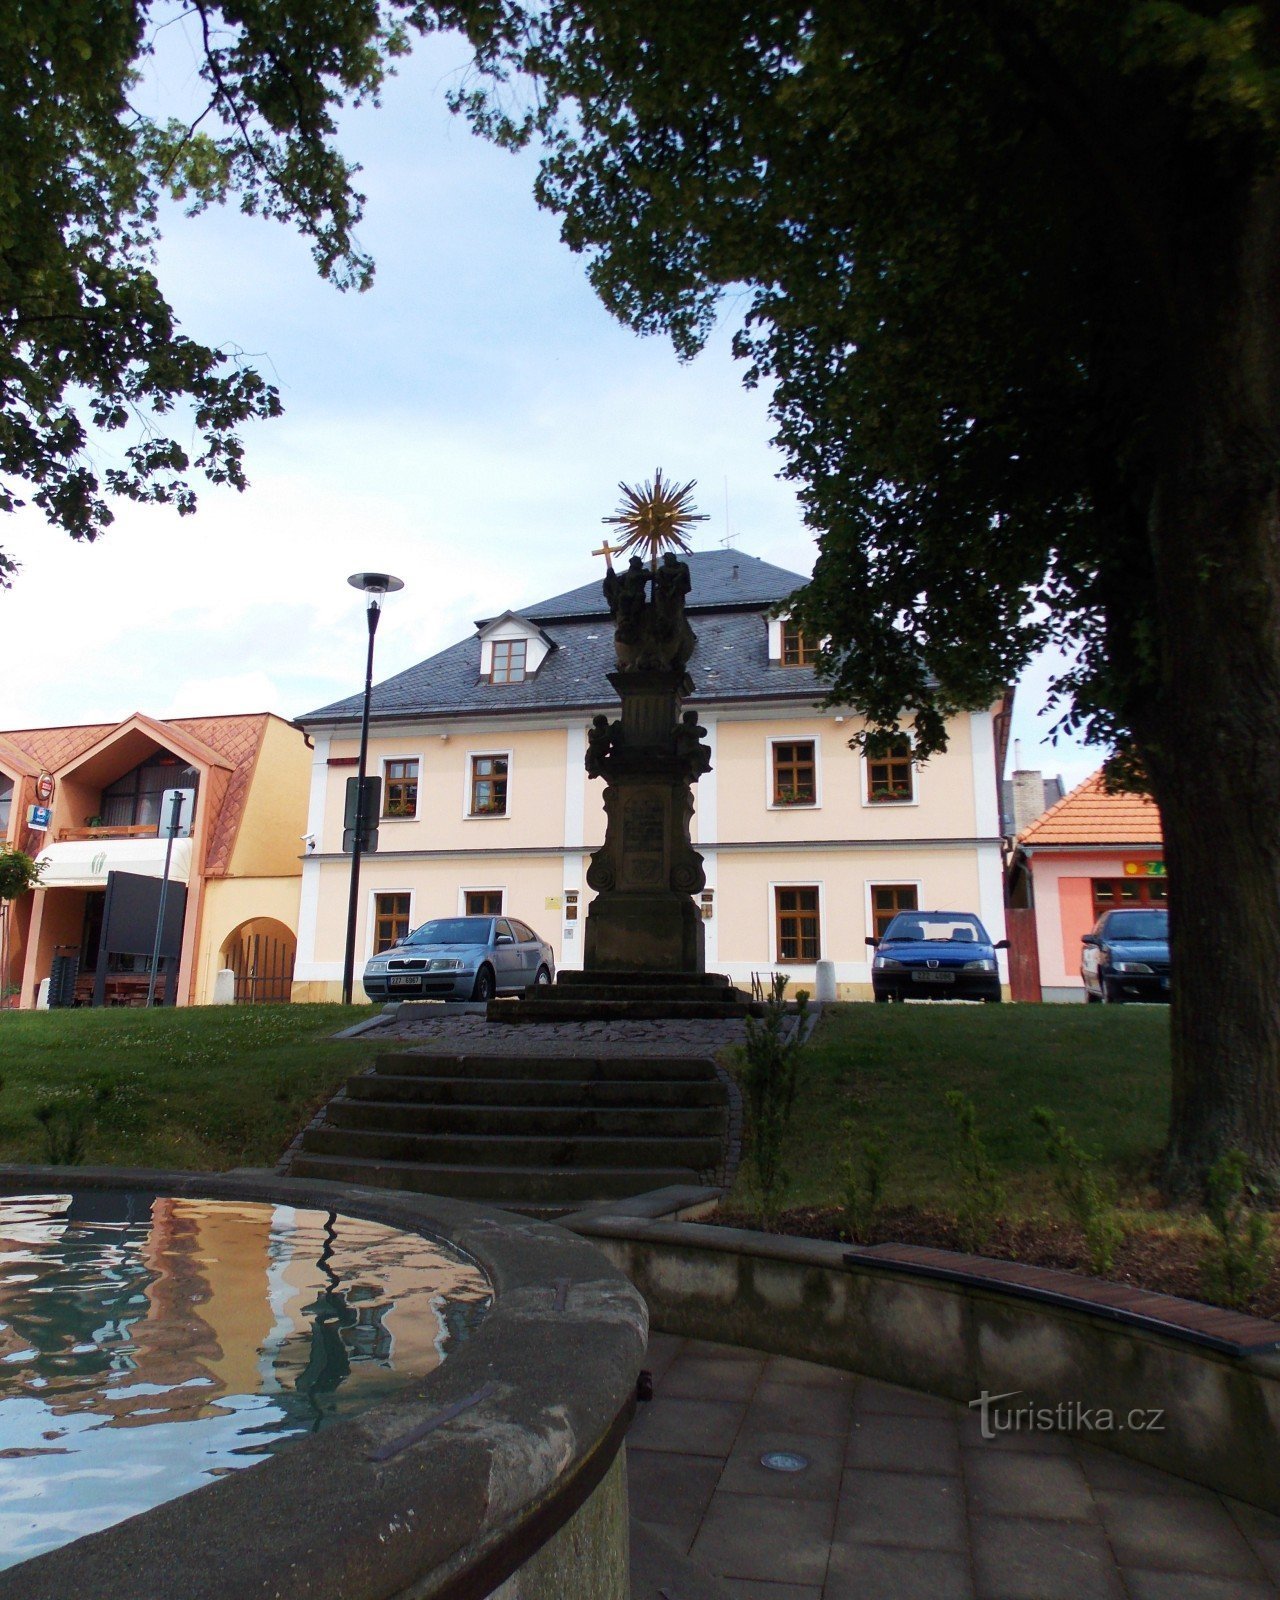 La fontana sulla piazza di Brumov